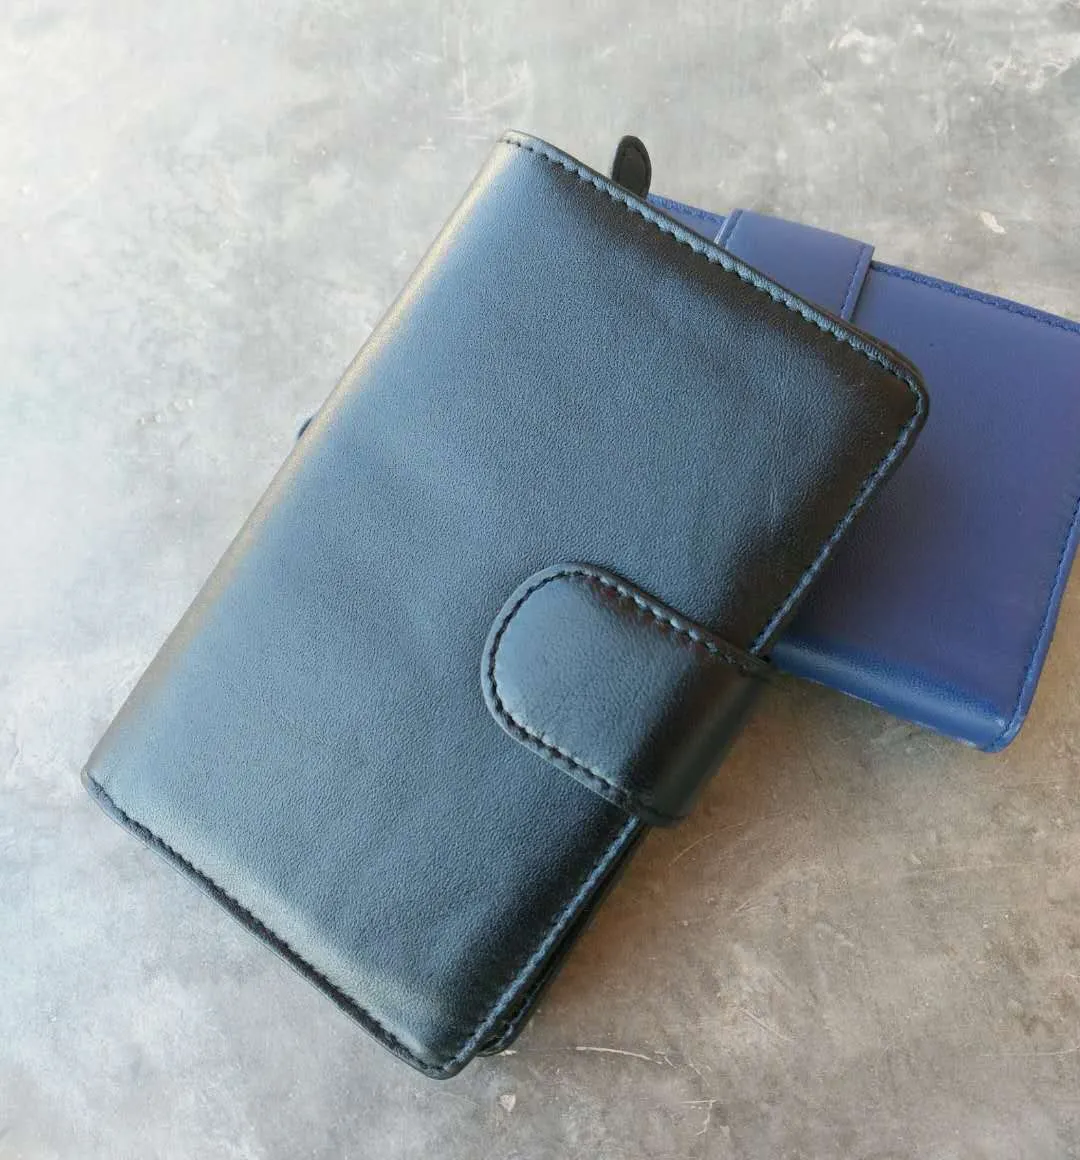 2018 새로운 디자인 블랙 양피 가죽 여성용 지갑 중간 롱 지갑 한국 스타일 패션 지갑 정품 가죽 지갑 도매 가방